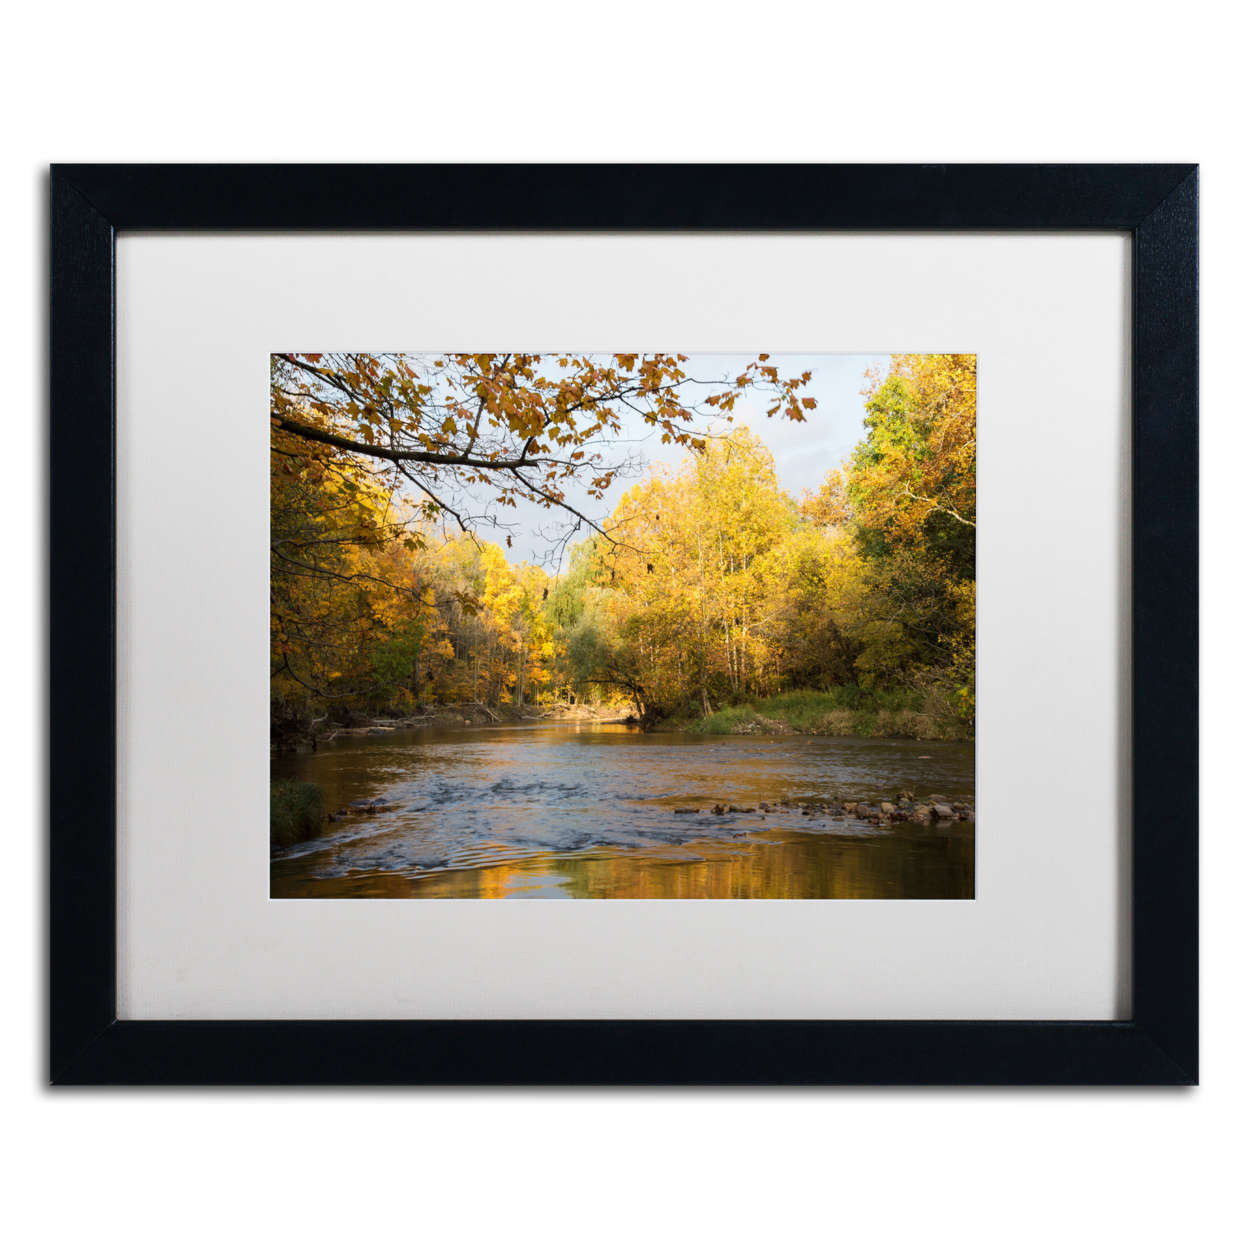 Kurt Shaffer 'Golden Autumn River' Black Wooden Framed Art 18 X 22 Inches